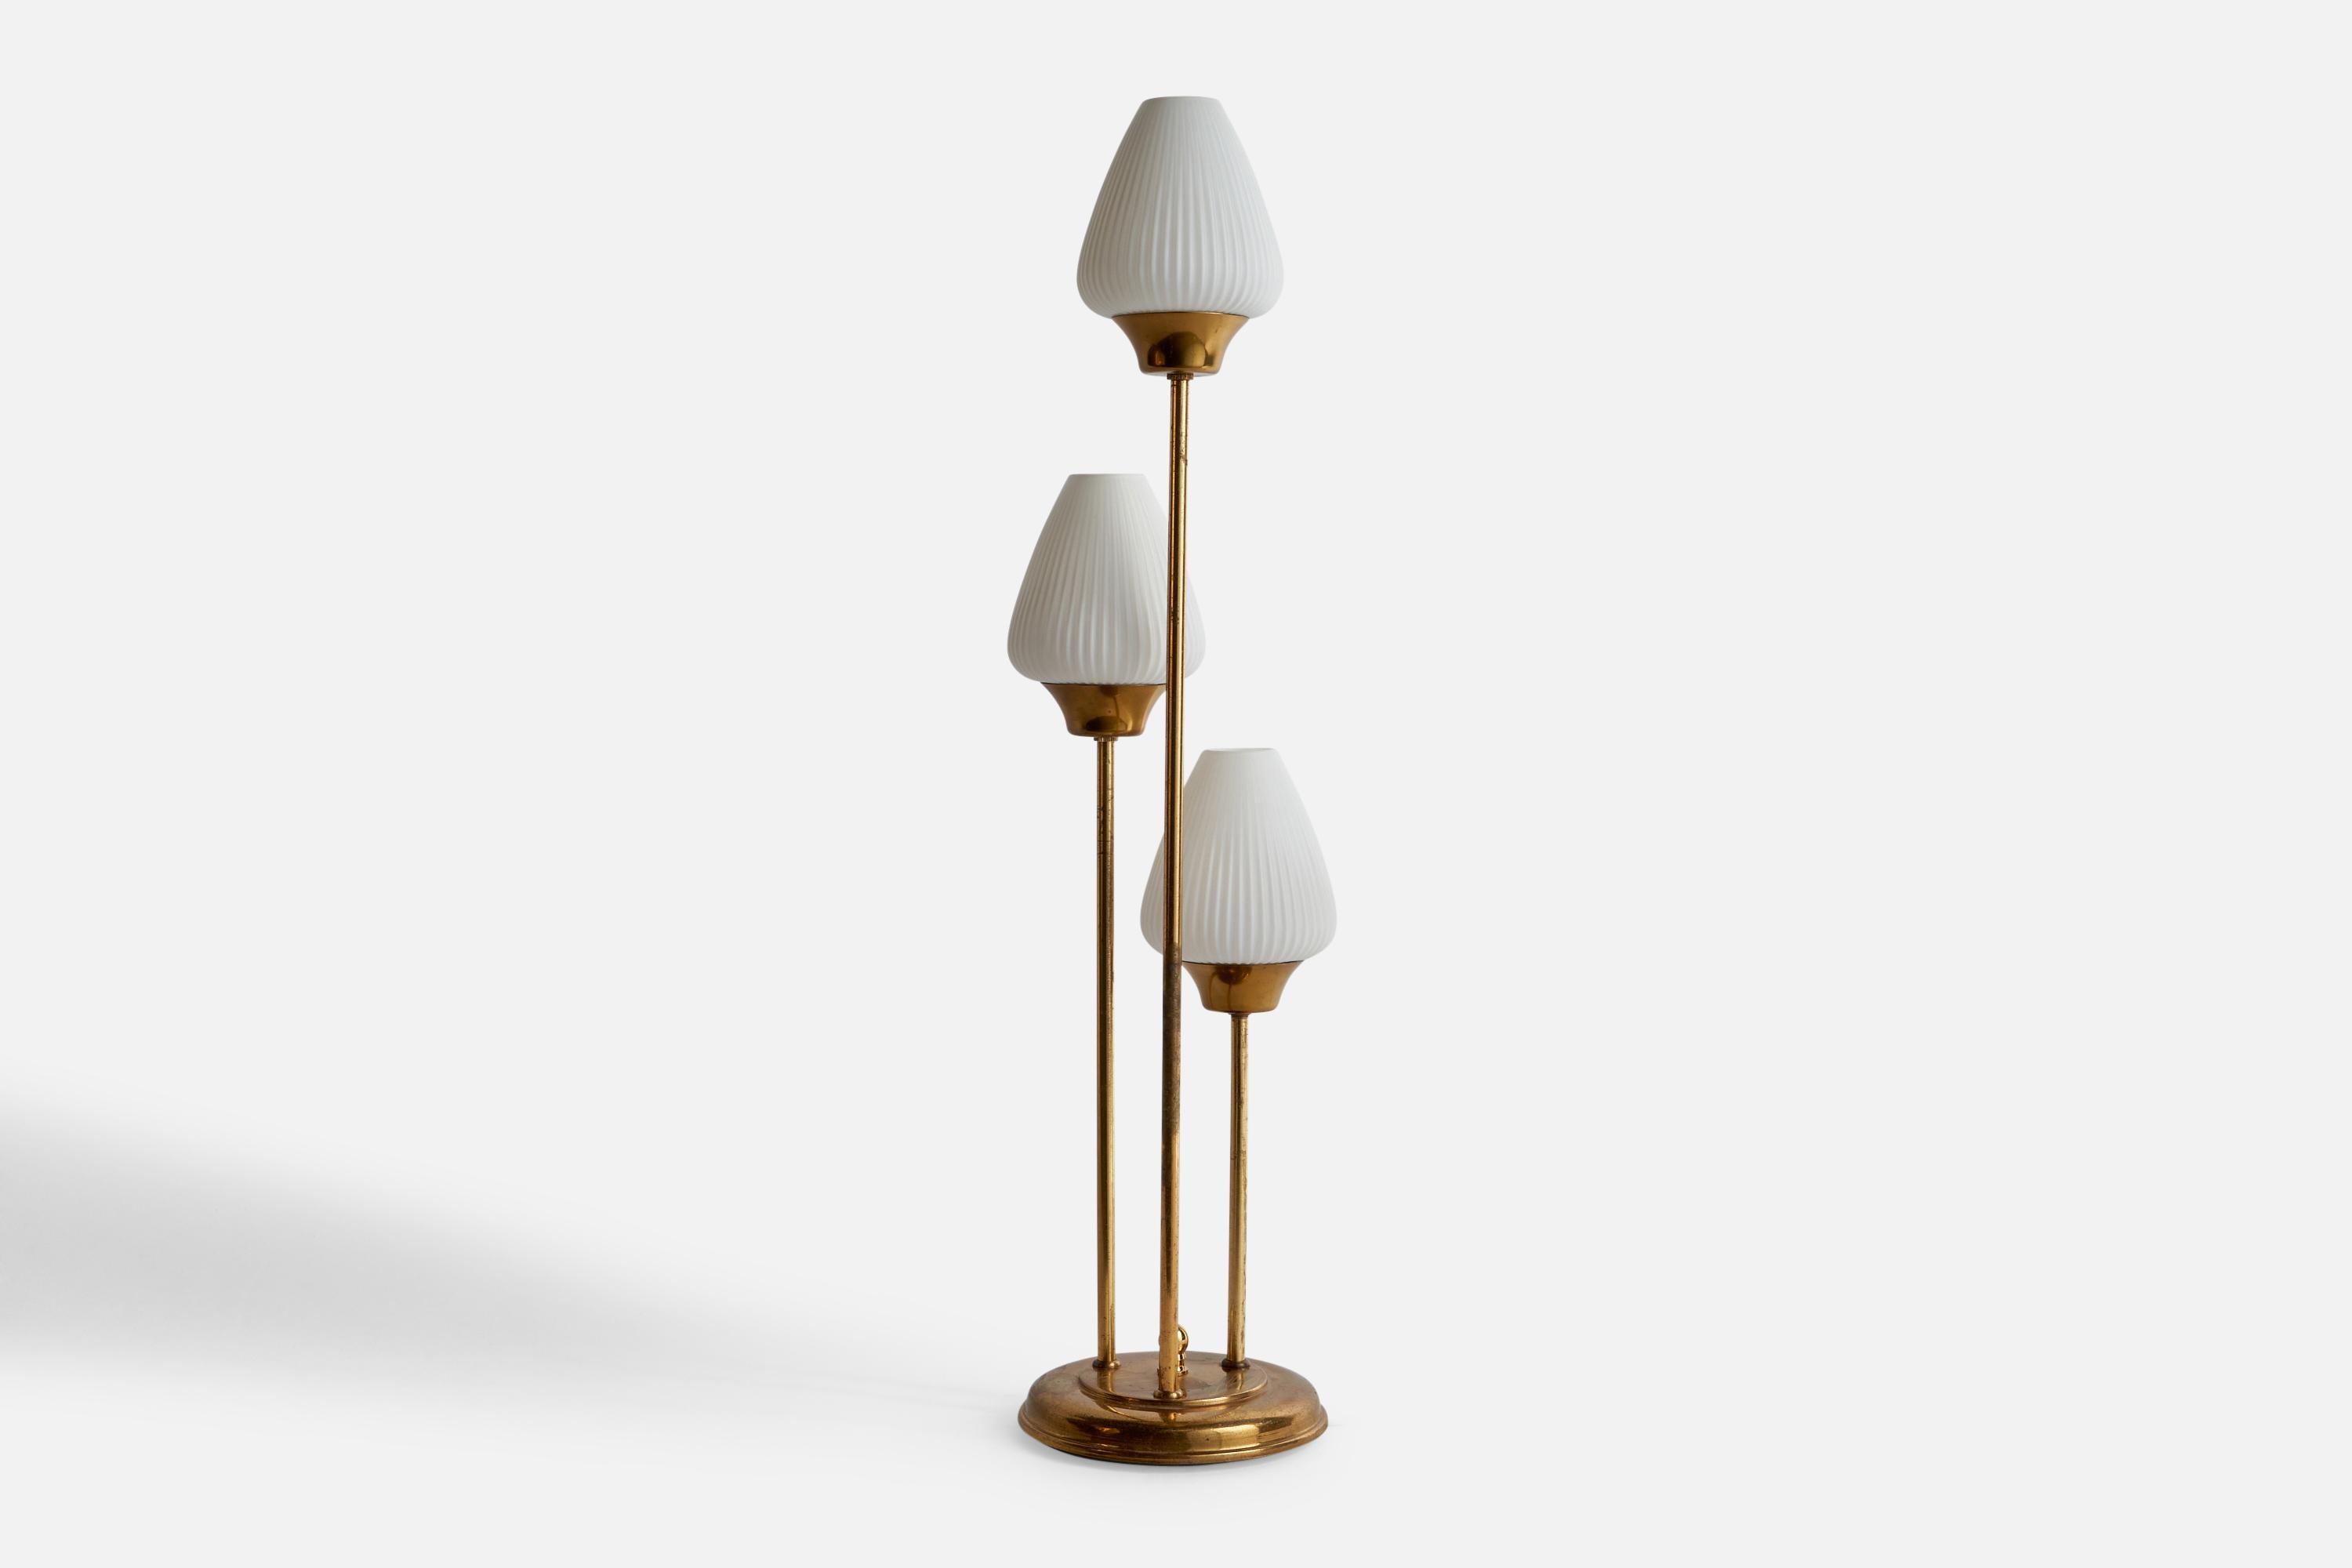 Lampe de table à trois bras en laiton et verre opalin, conçue et produite par Abo Randers, Danemark, années 1970.

Dimensions globales (pouces) : 26.38